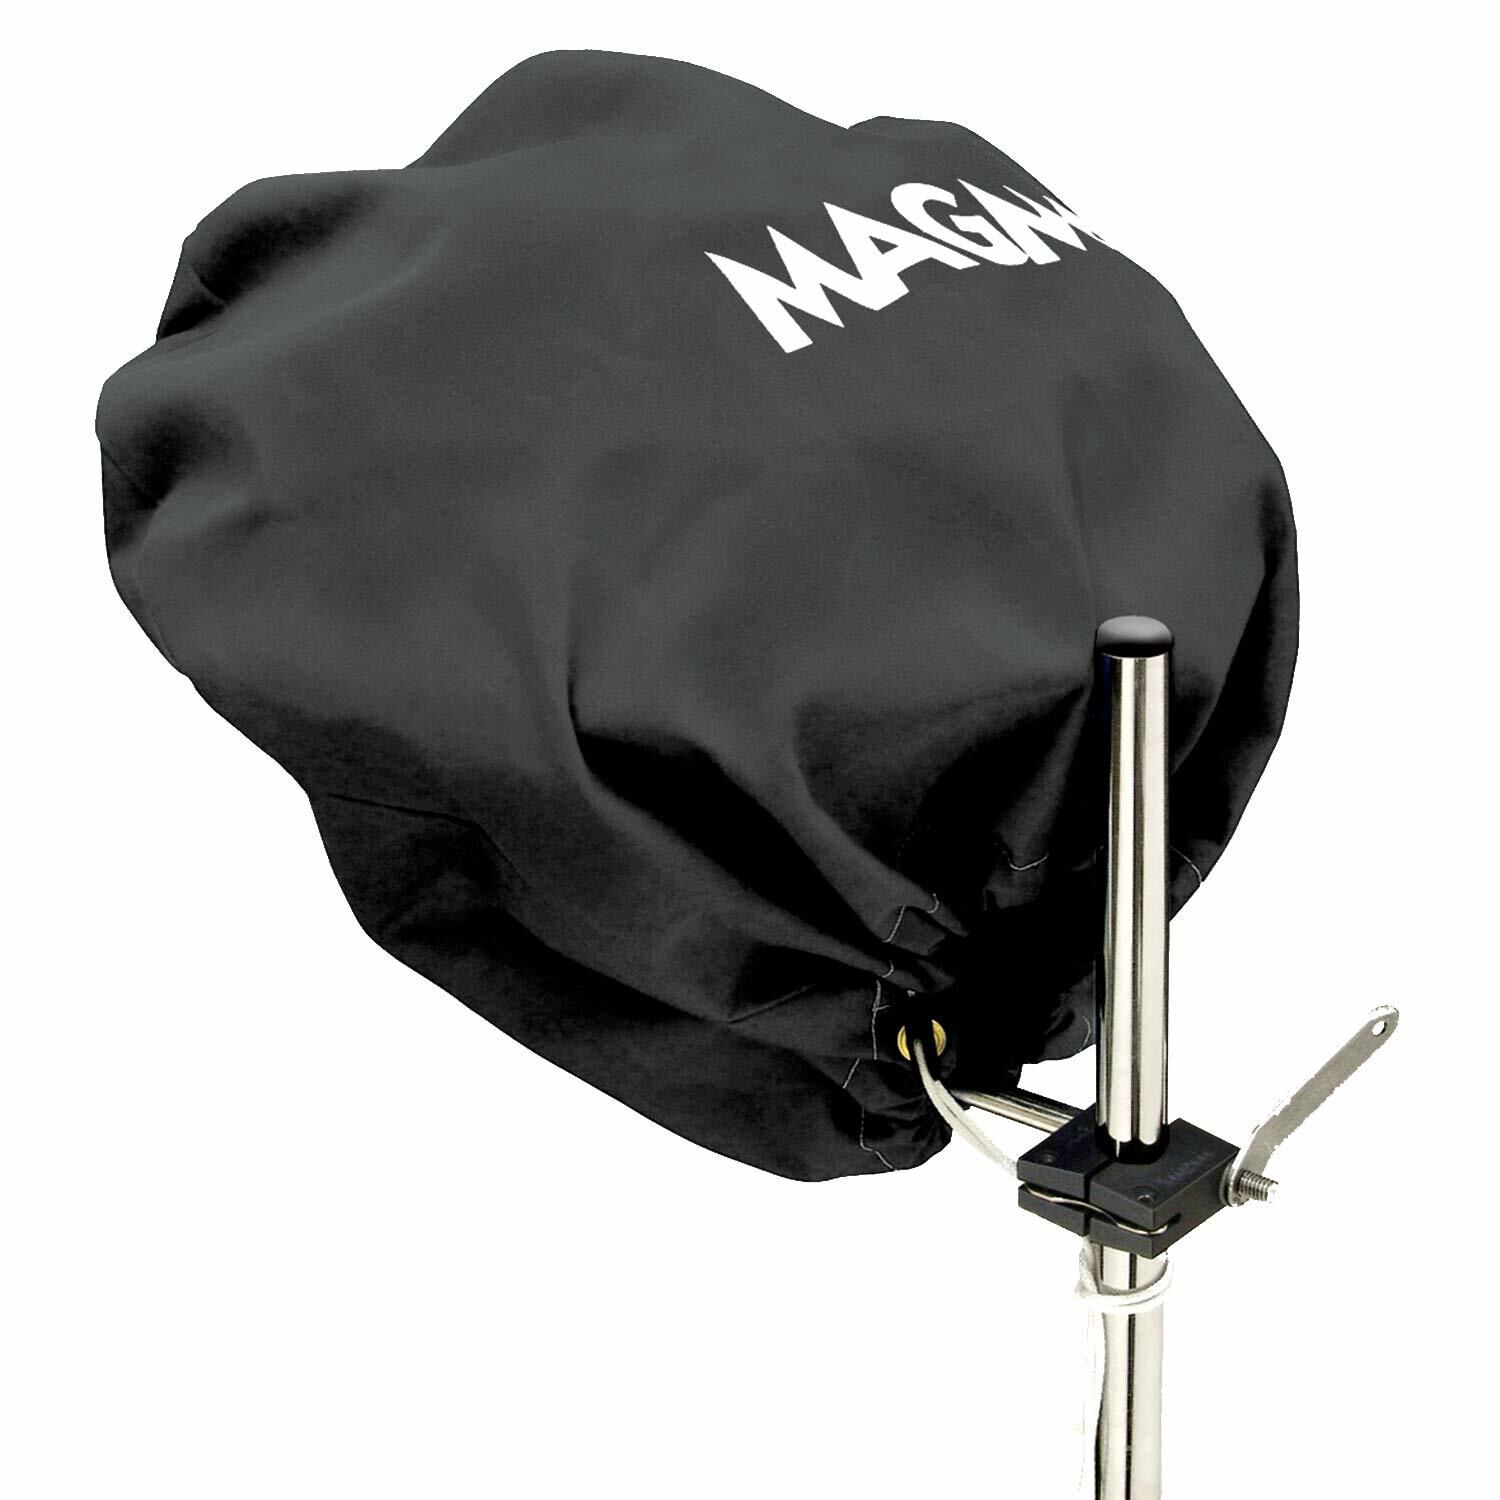 Sunbrella and Newport Grill Magma Cover 